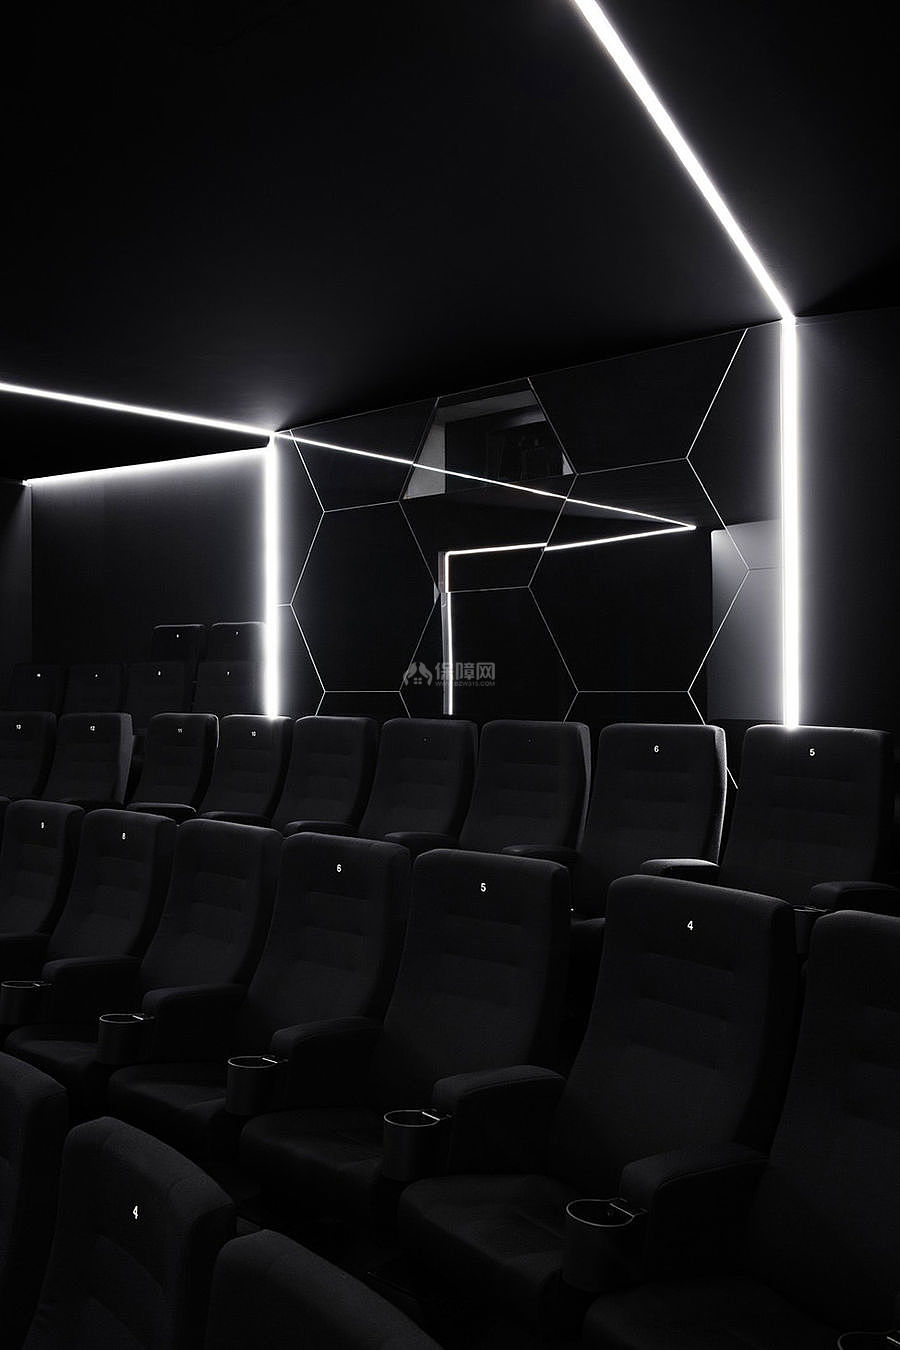 科特布斯影院之影厅座位布置效果图